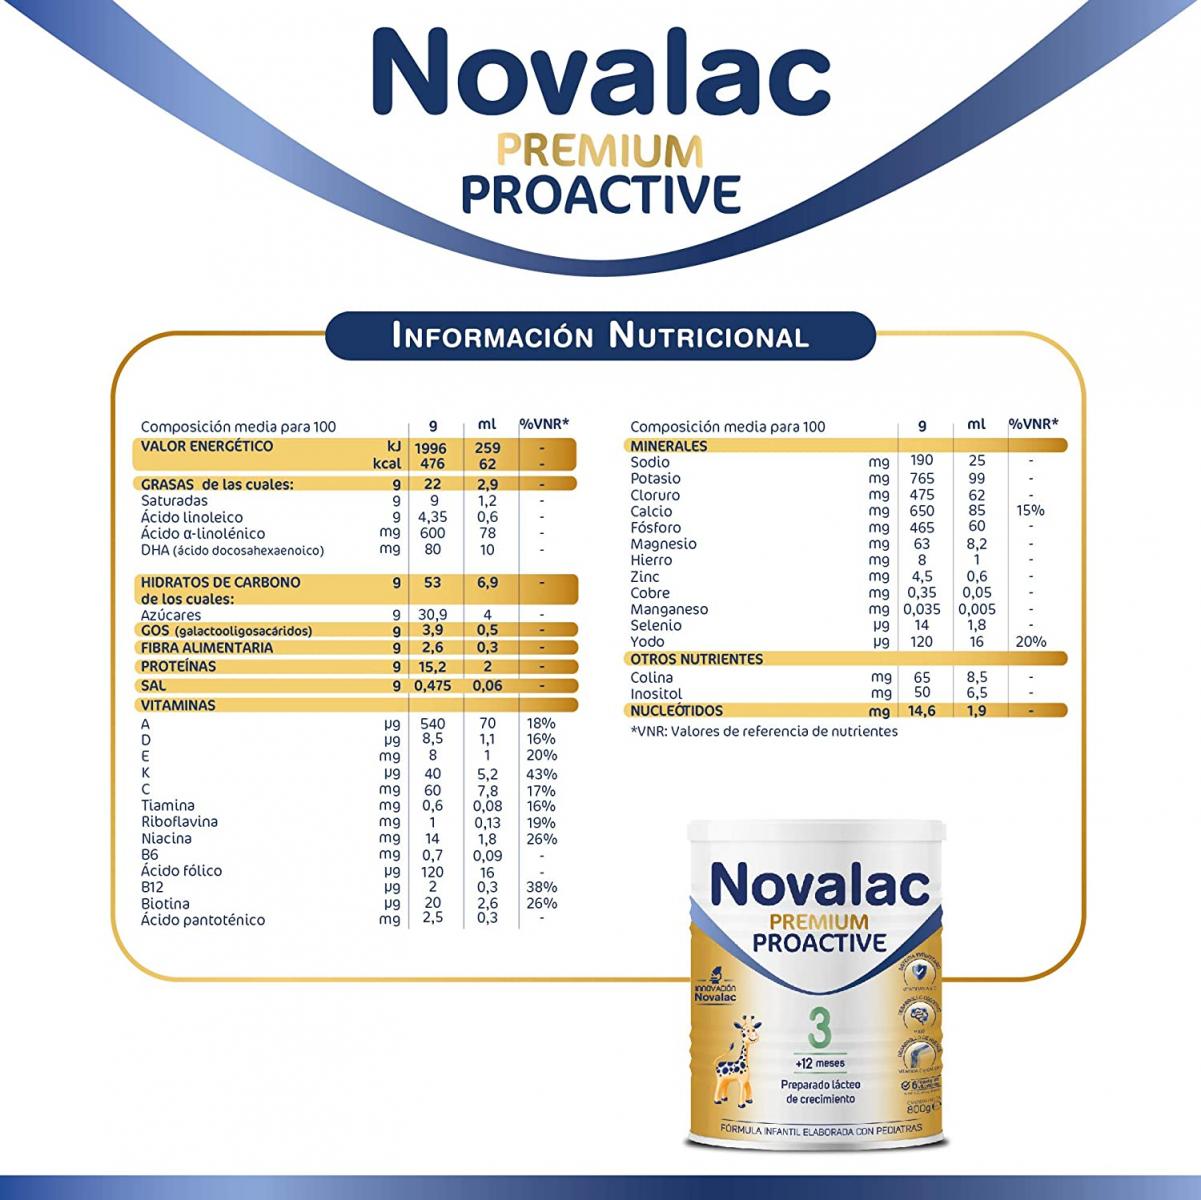 Novalac Premium Proactive 3 800 G - Farmacia Online Barata Liceo. Envíos  24/48 Horas.